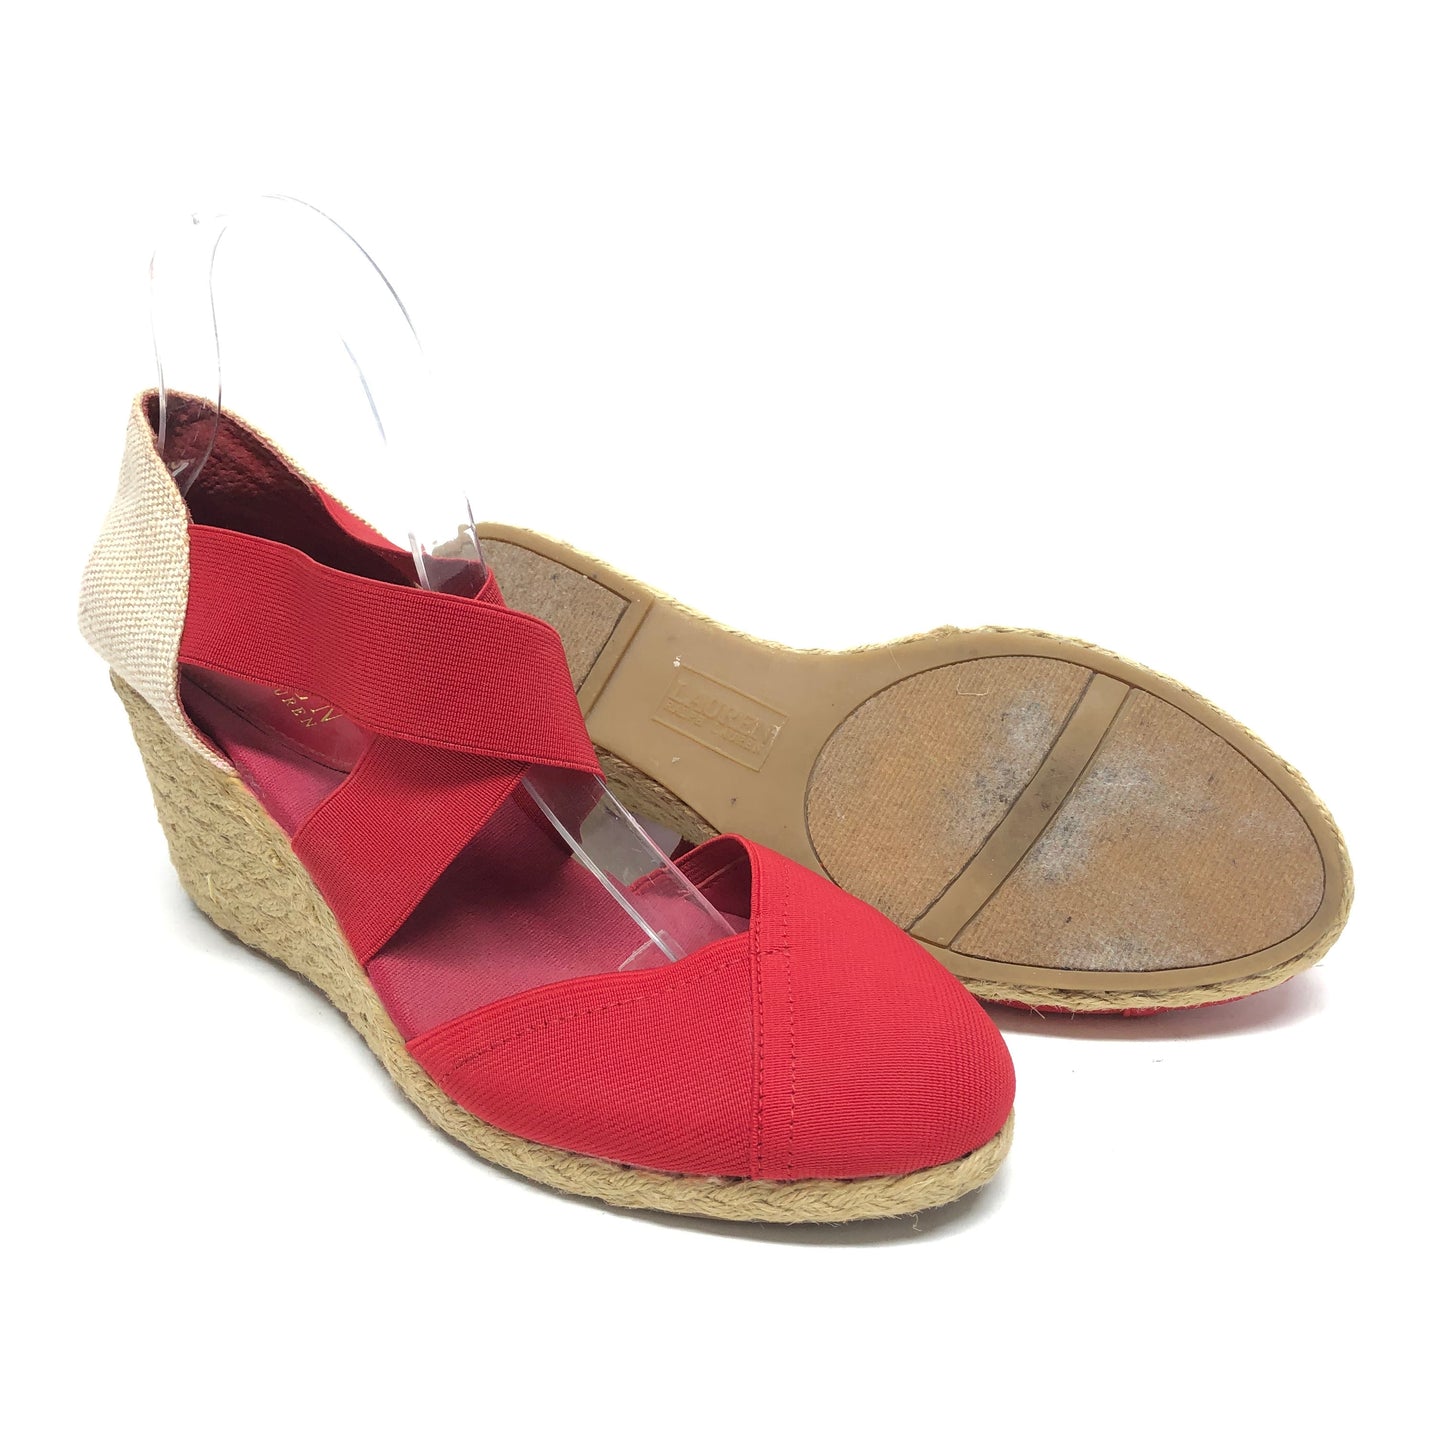 Sandals Heels Wedge By Lauren By Ralph Lauren  Size: 10